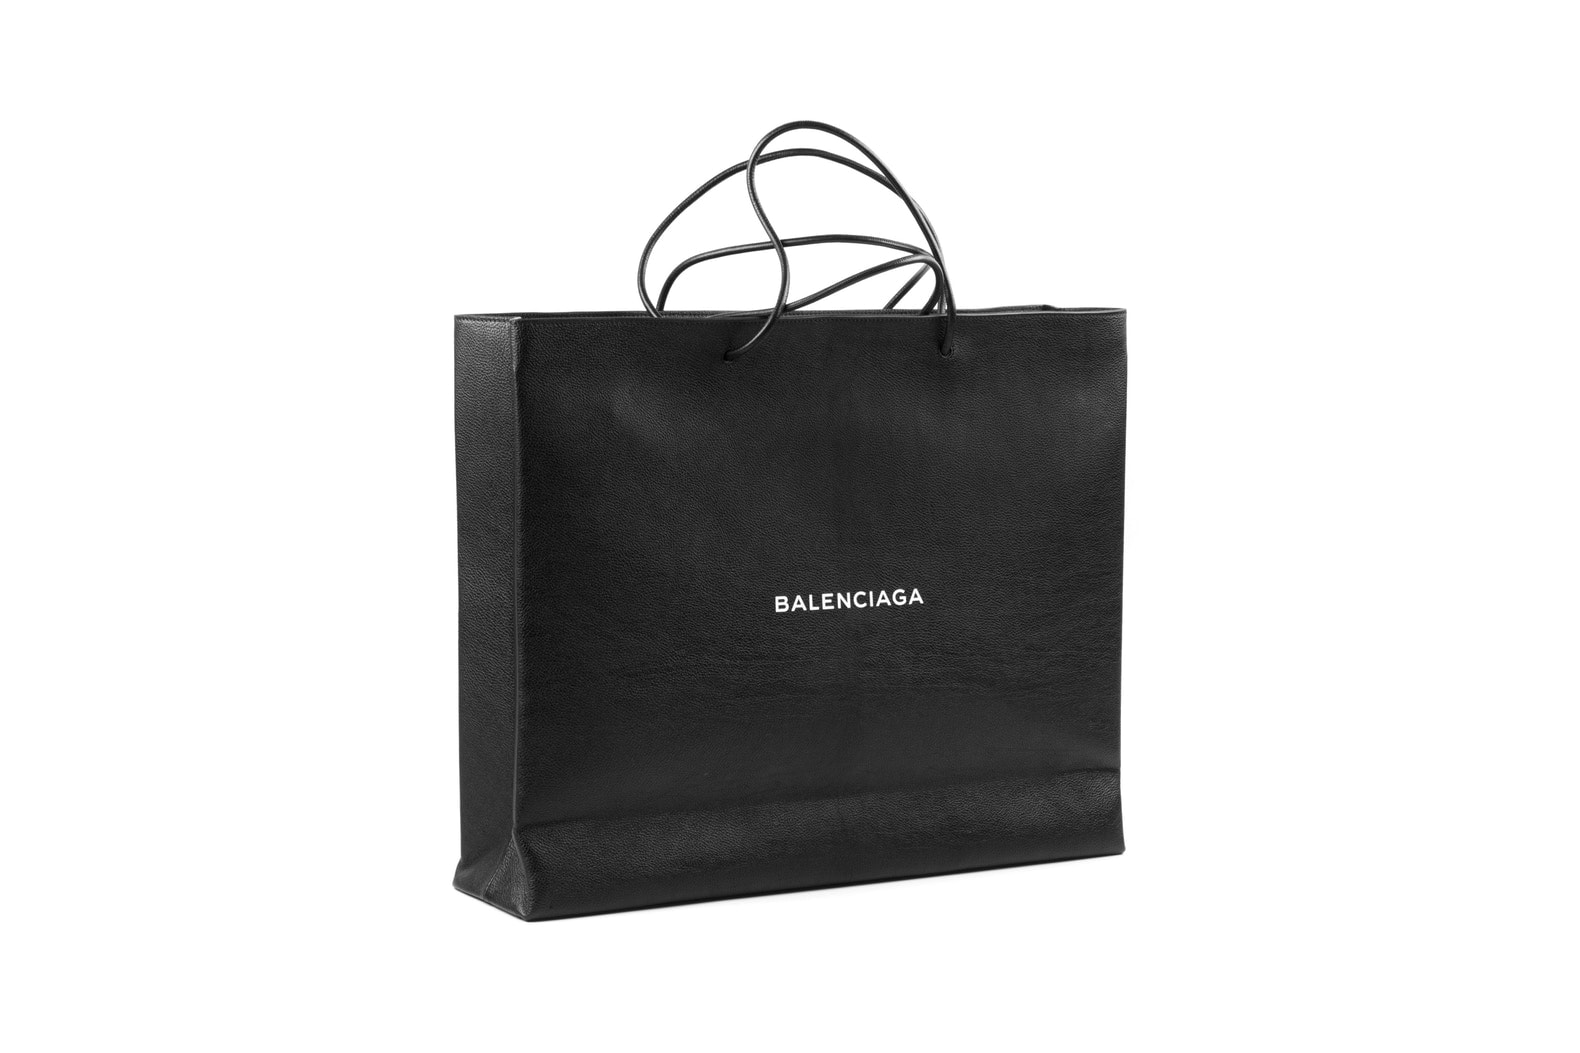 Balenciaga Black Shopping Bag 1800 USD